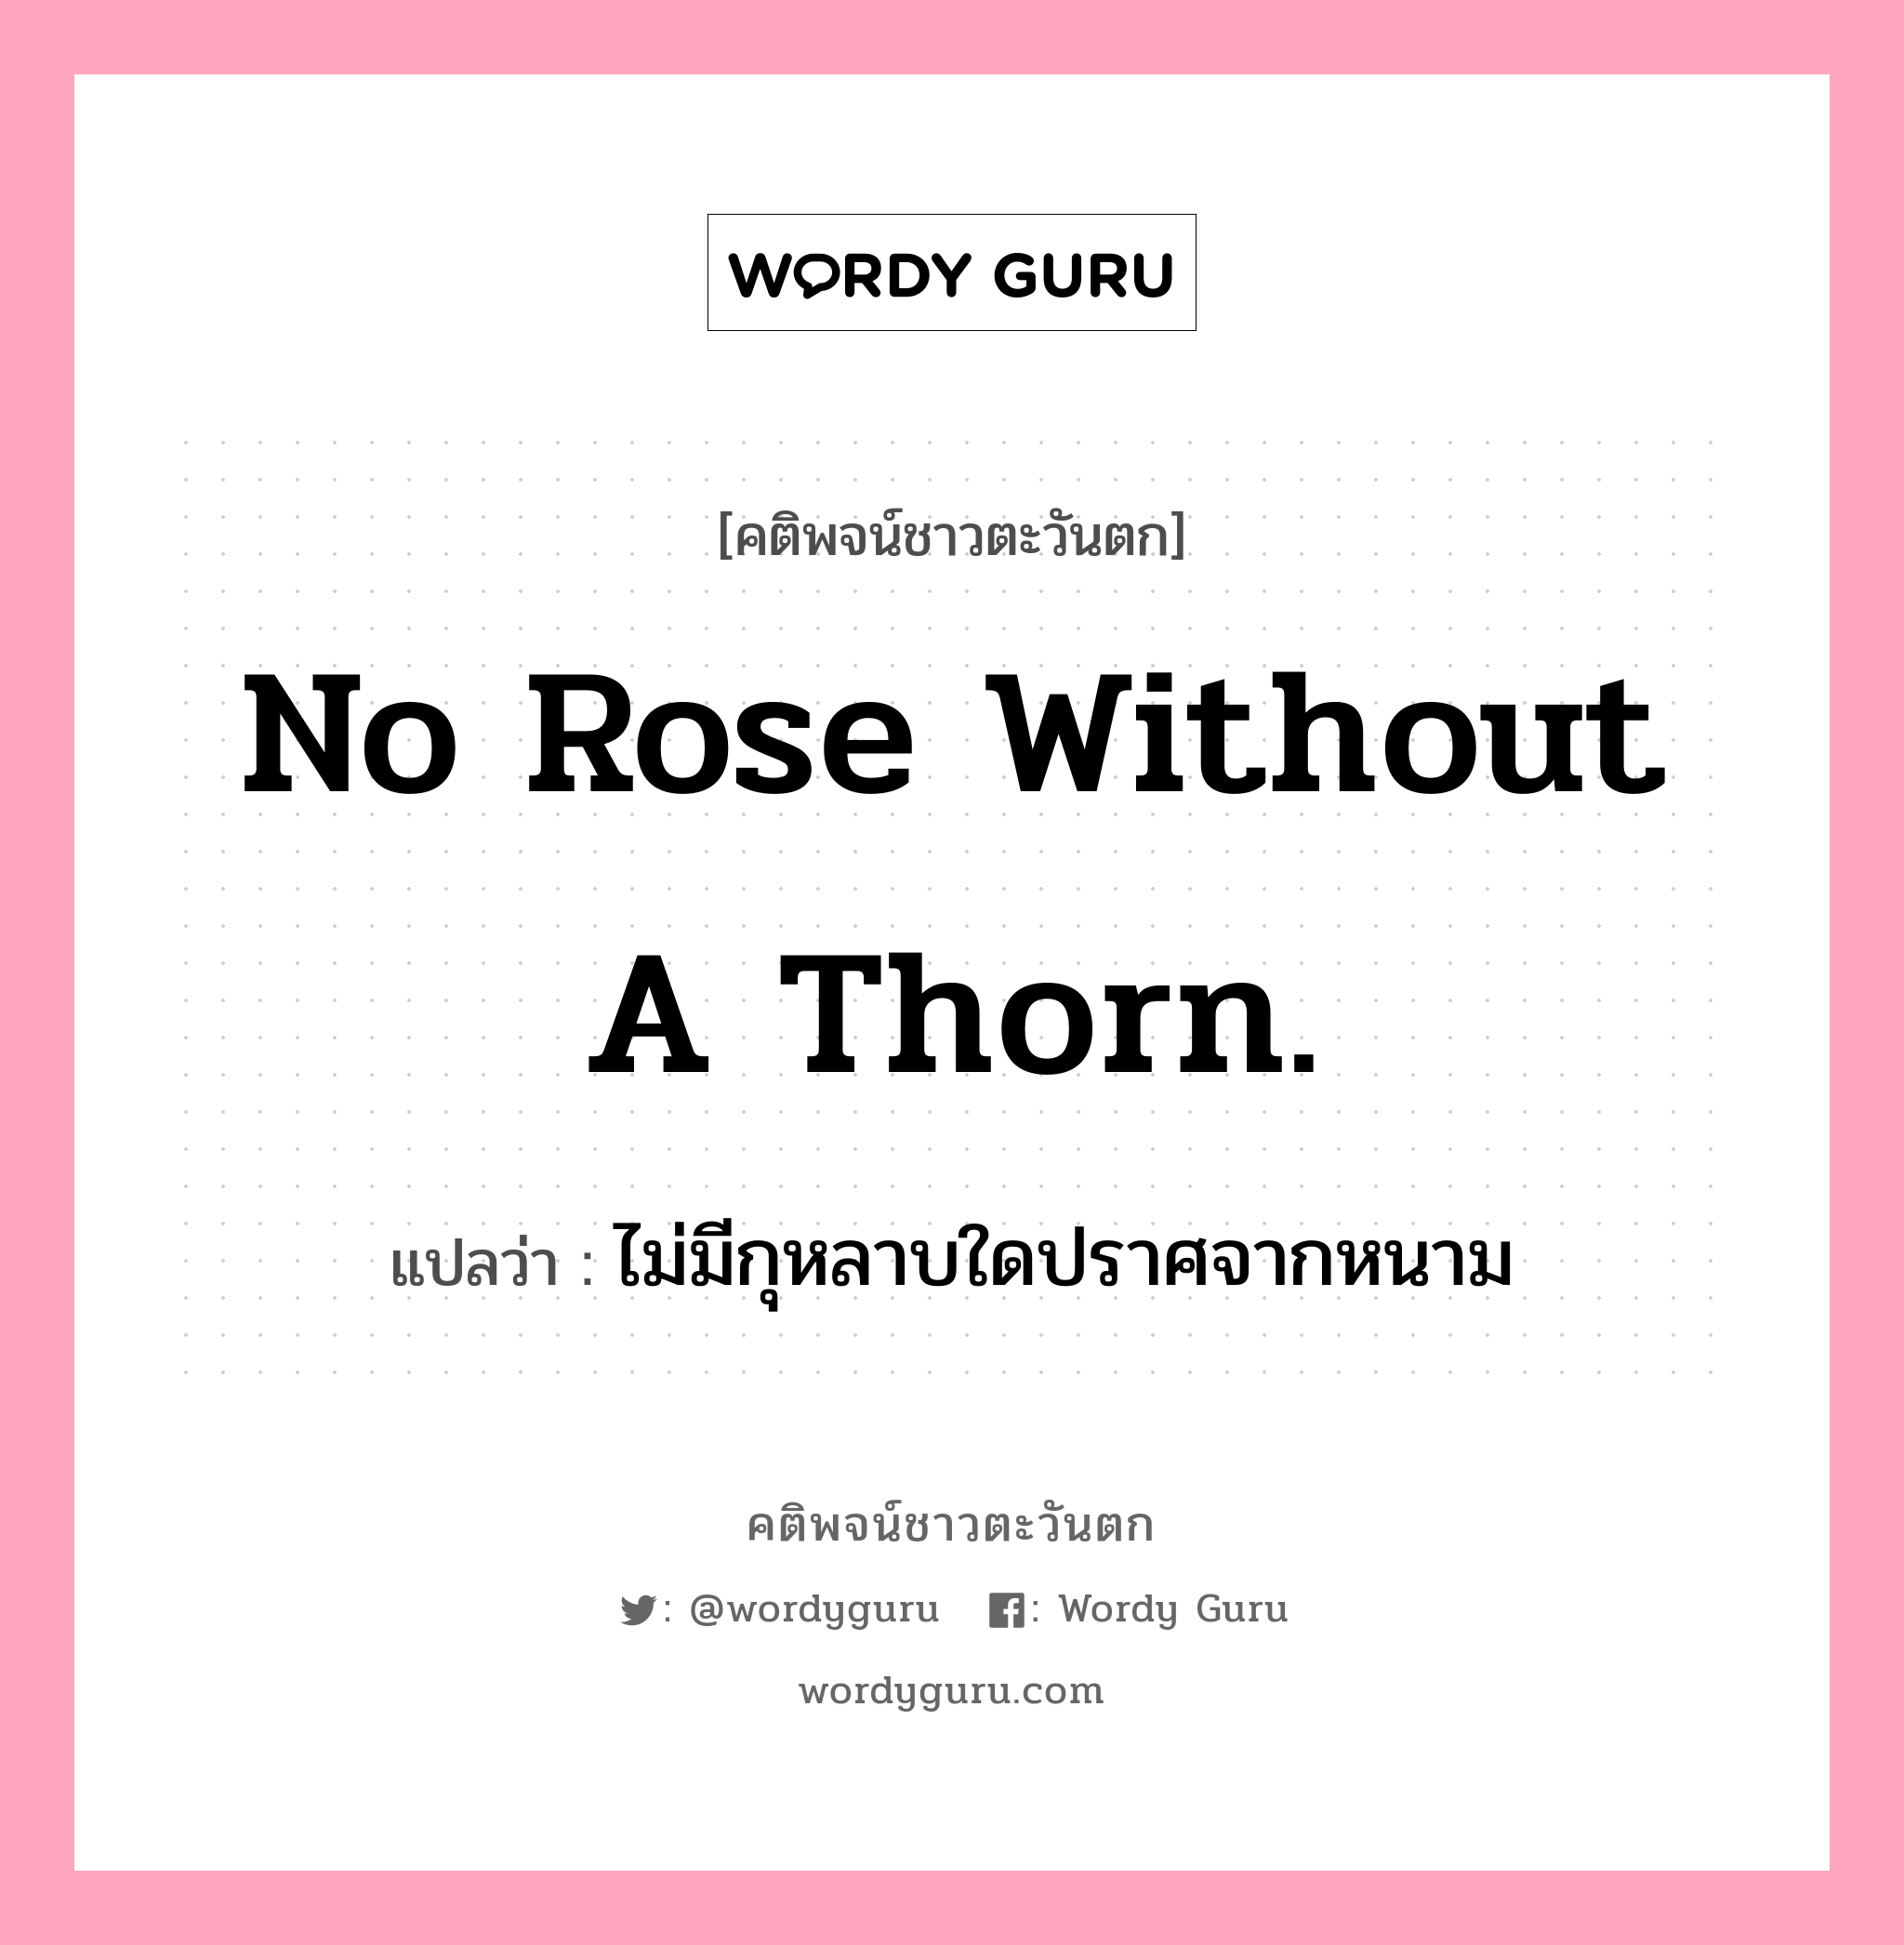 No rose without a thorn., คติพจน์ชาวตะวันตก No rose without a thorn. แปลว่า ไม่มีกุหลาบใดปราศจากหนาม